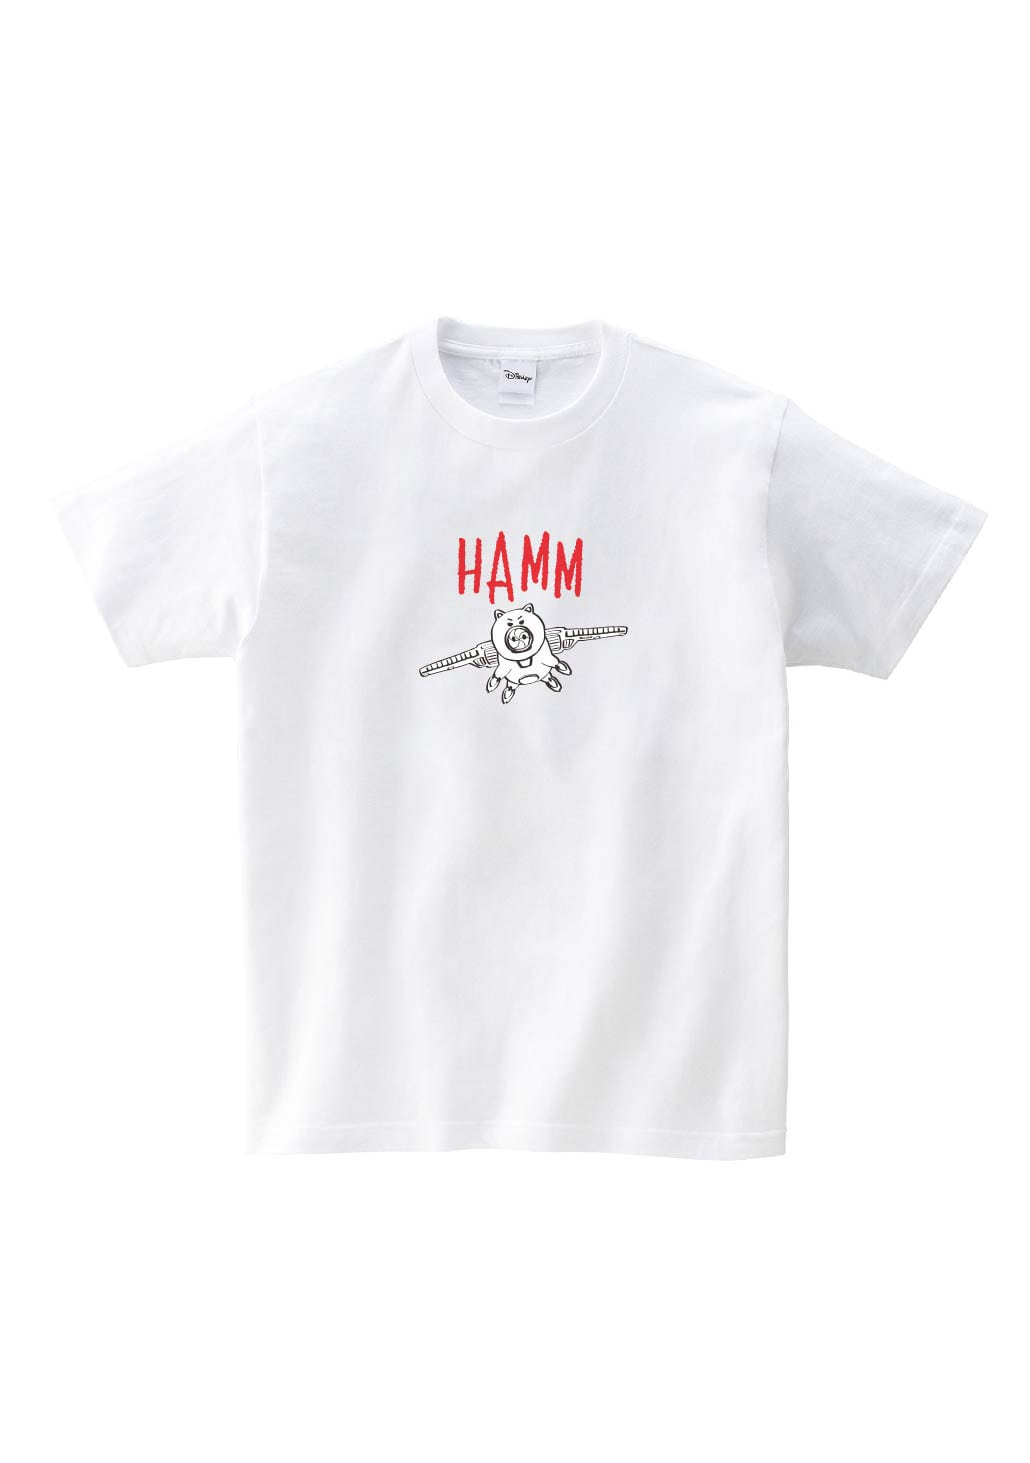 Swings Hamm (White)